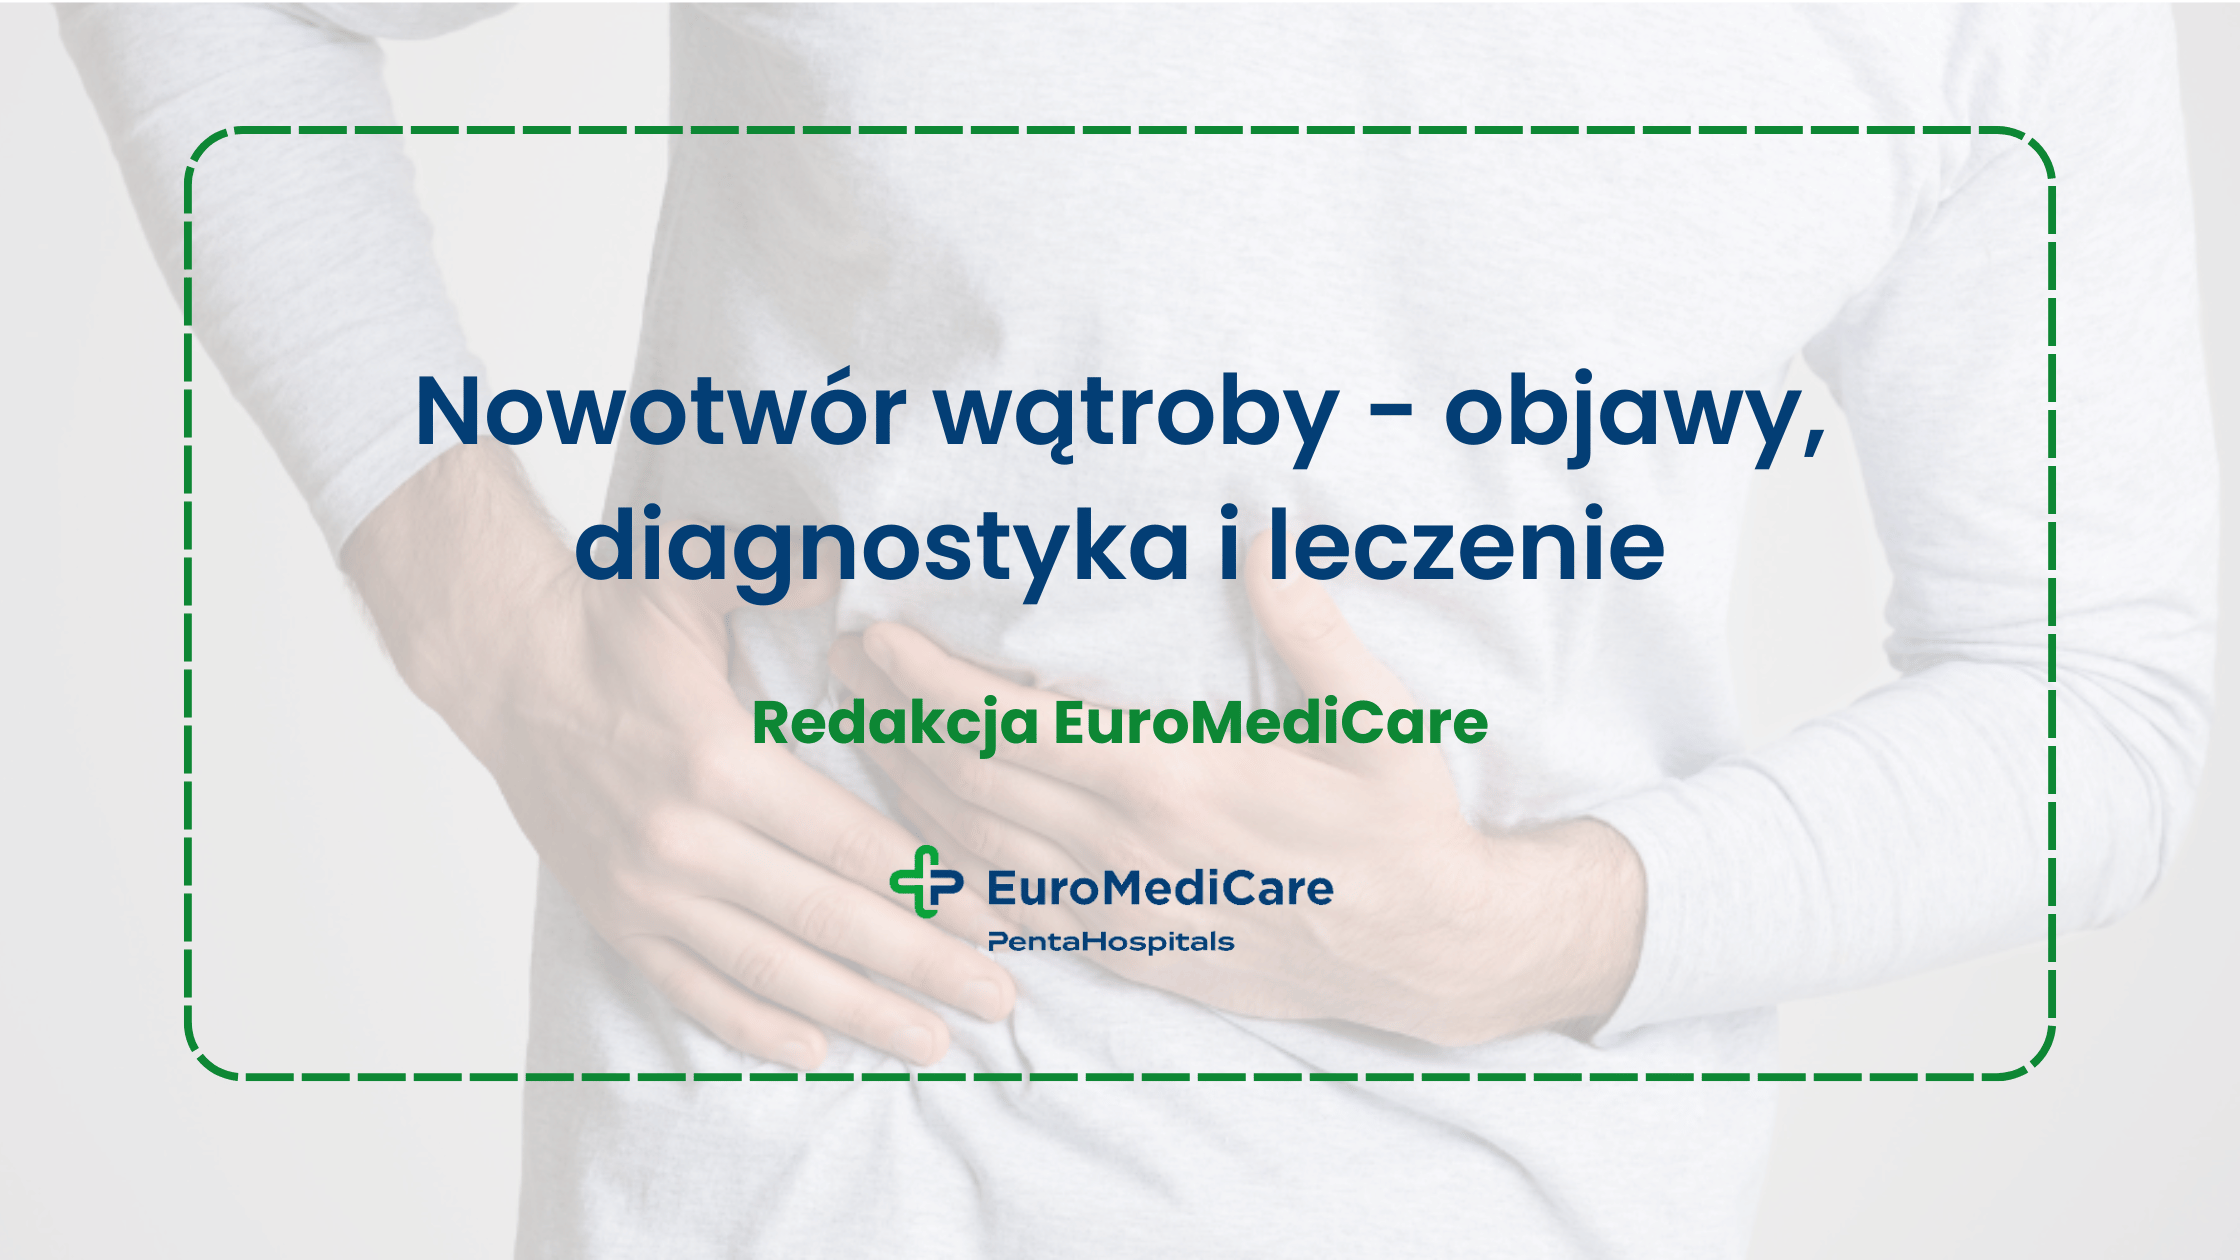 Nowotwór wątroby - objawy, diagnostyka i leczenie - blog euromedicare.pl